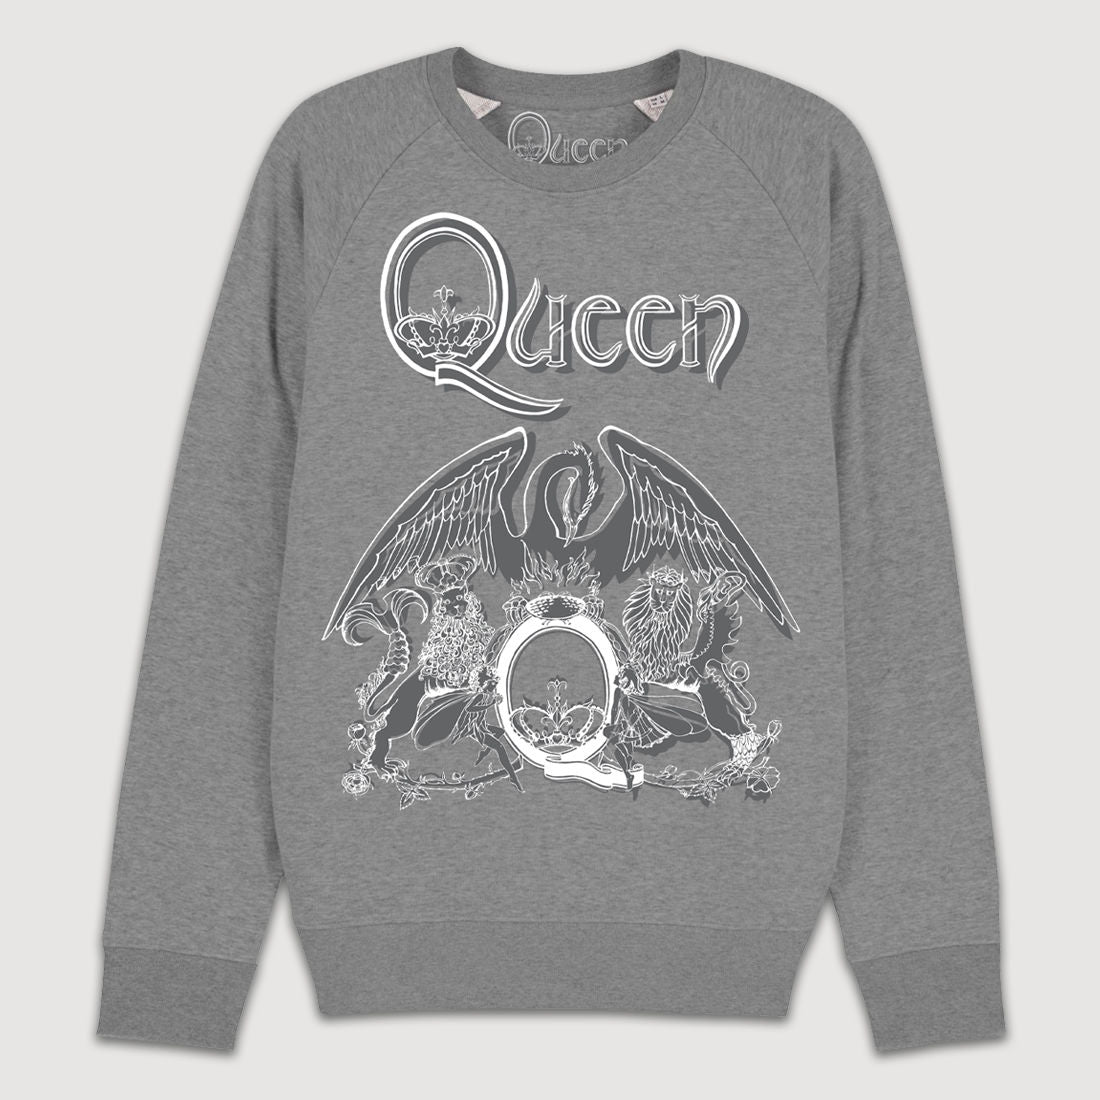 Queen - Platinum collection Sweatshirt 